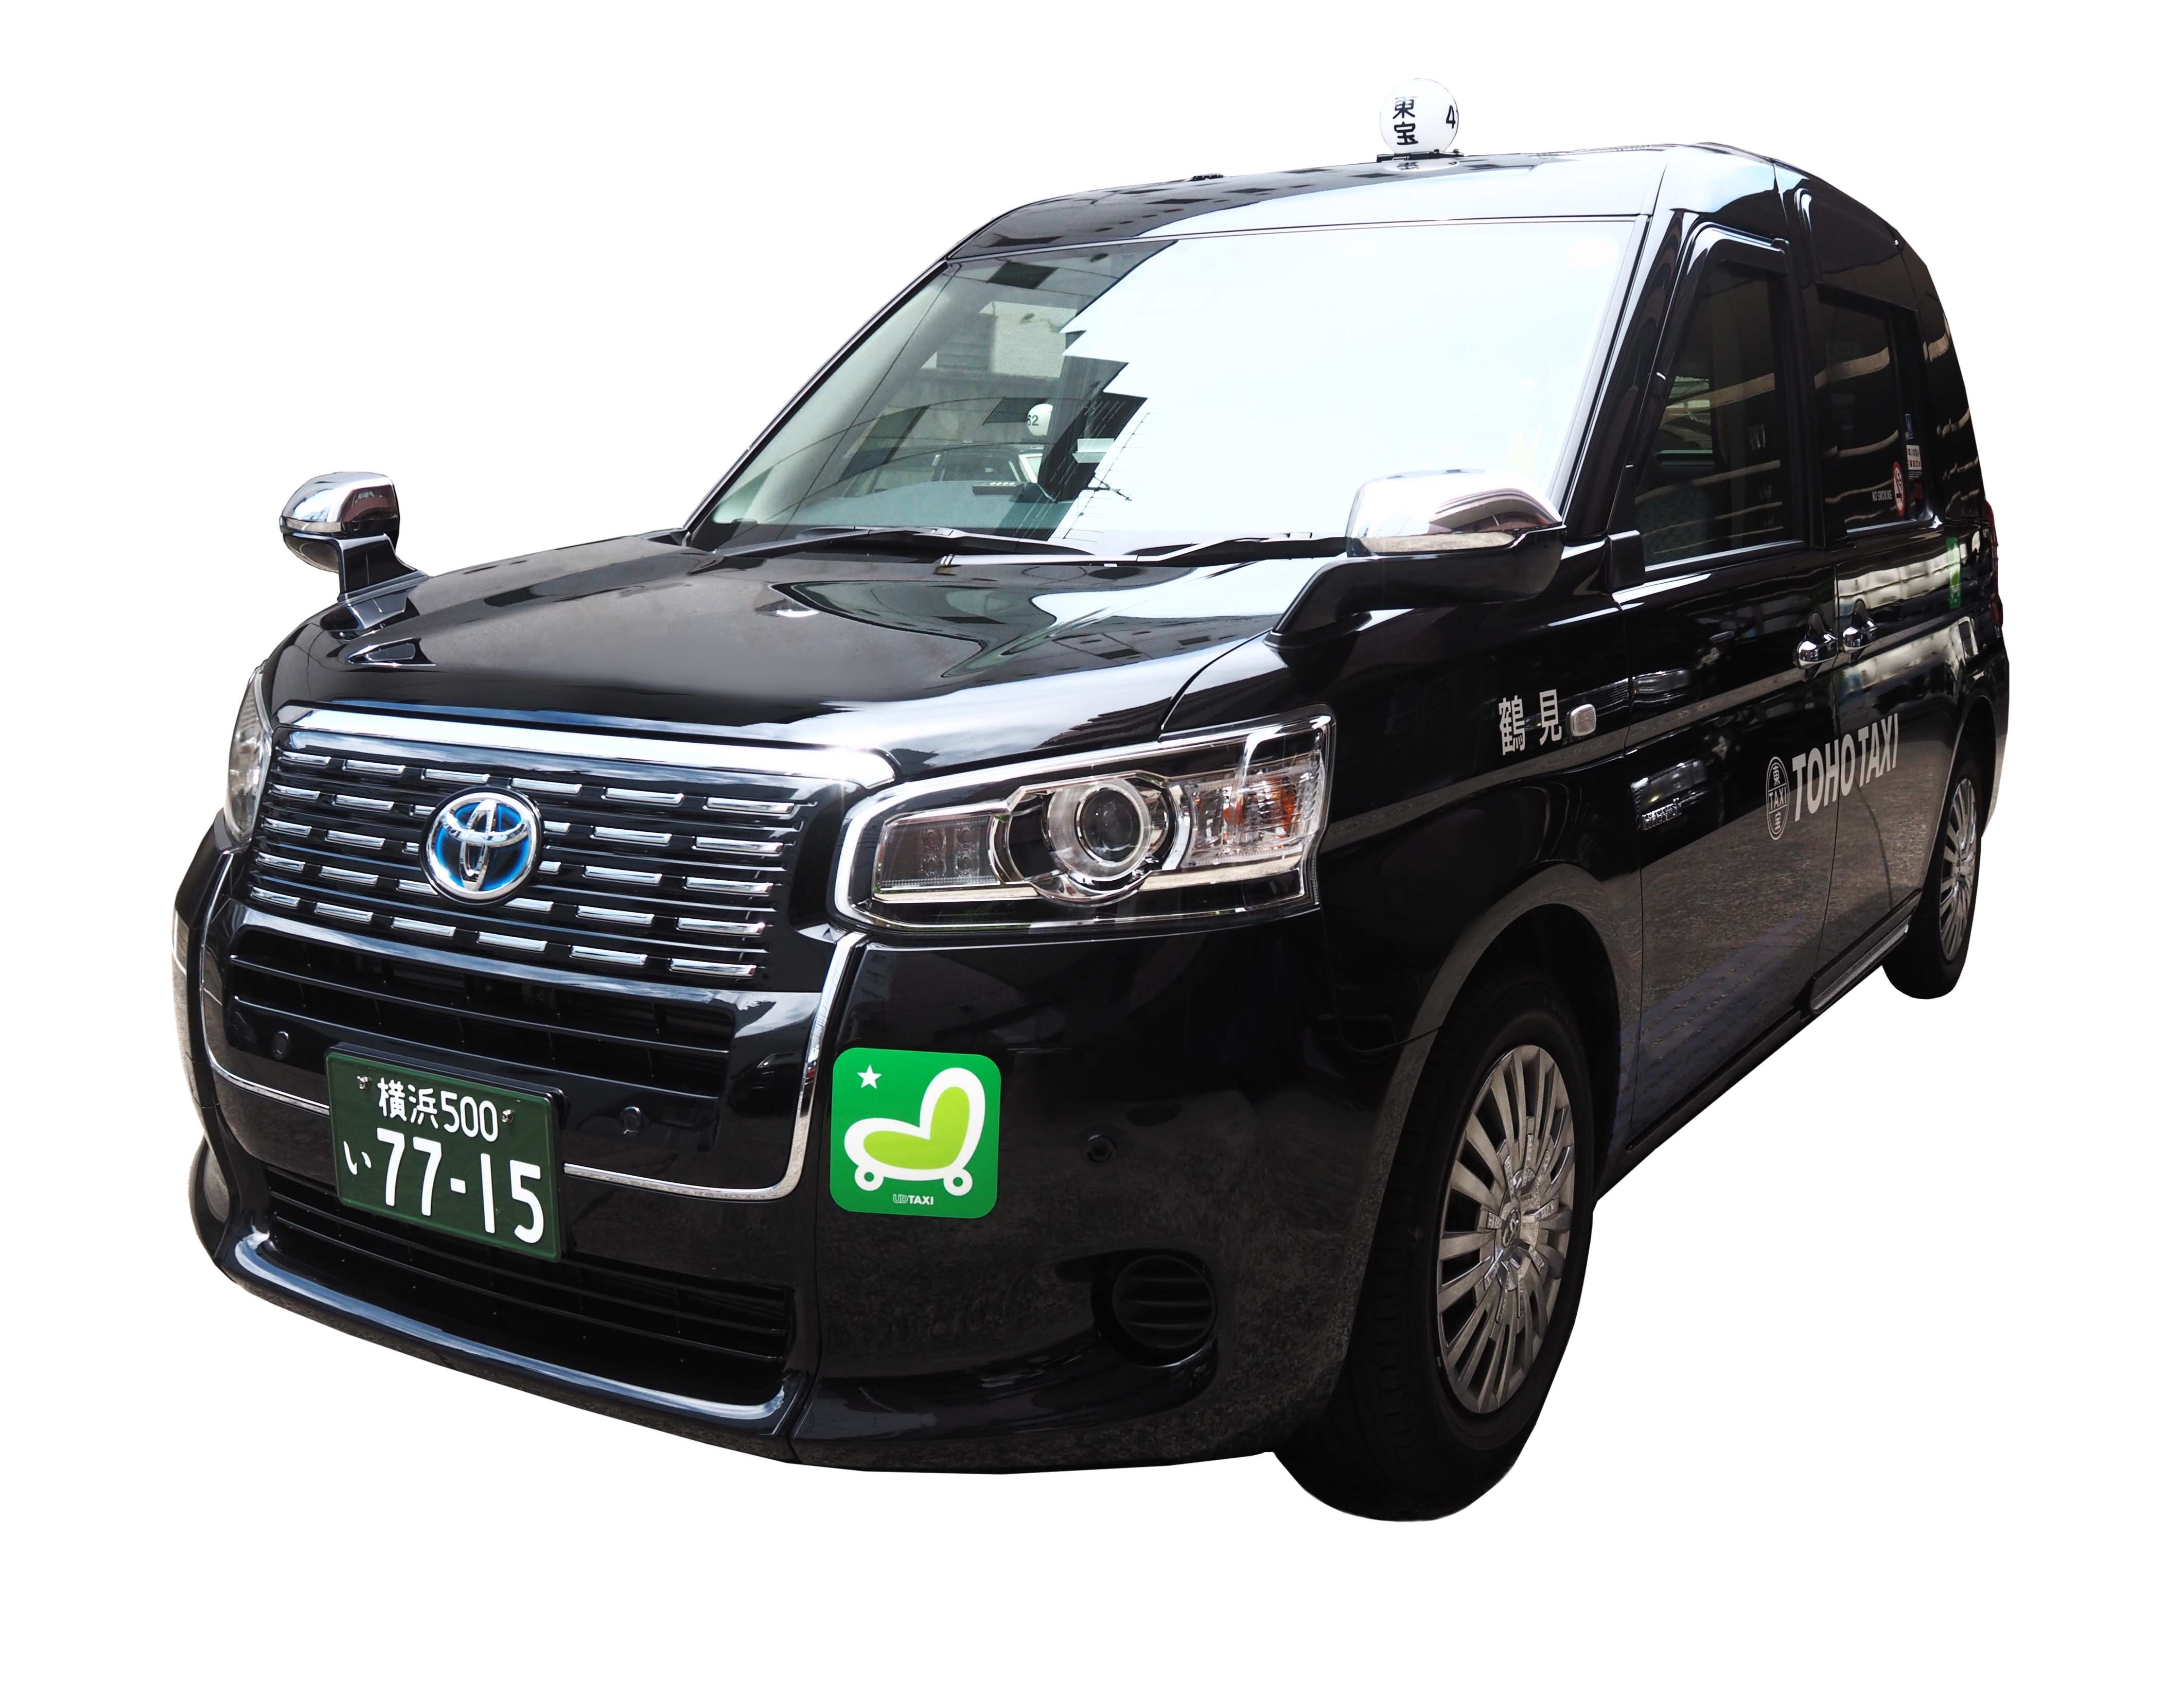 東宝タクシー株式会社のドライバー 運転手の求人 転職ならジョブハウス 合格で1万円 正社員 派遣 アルバイト